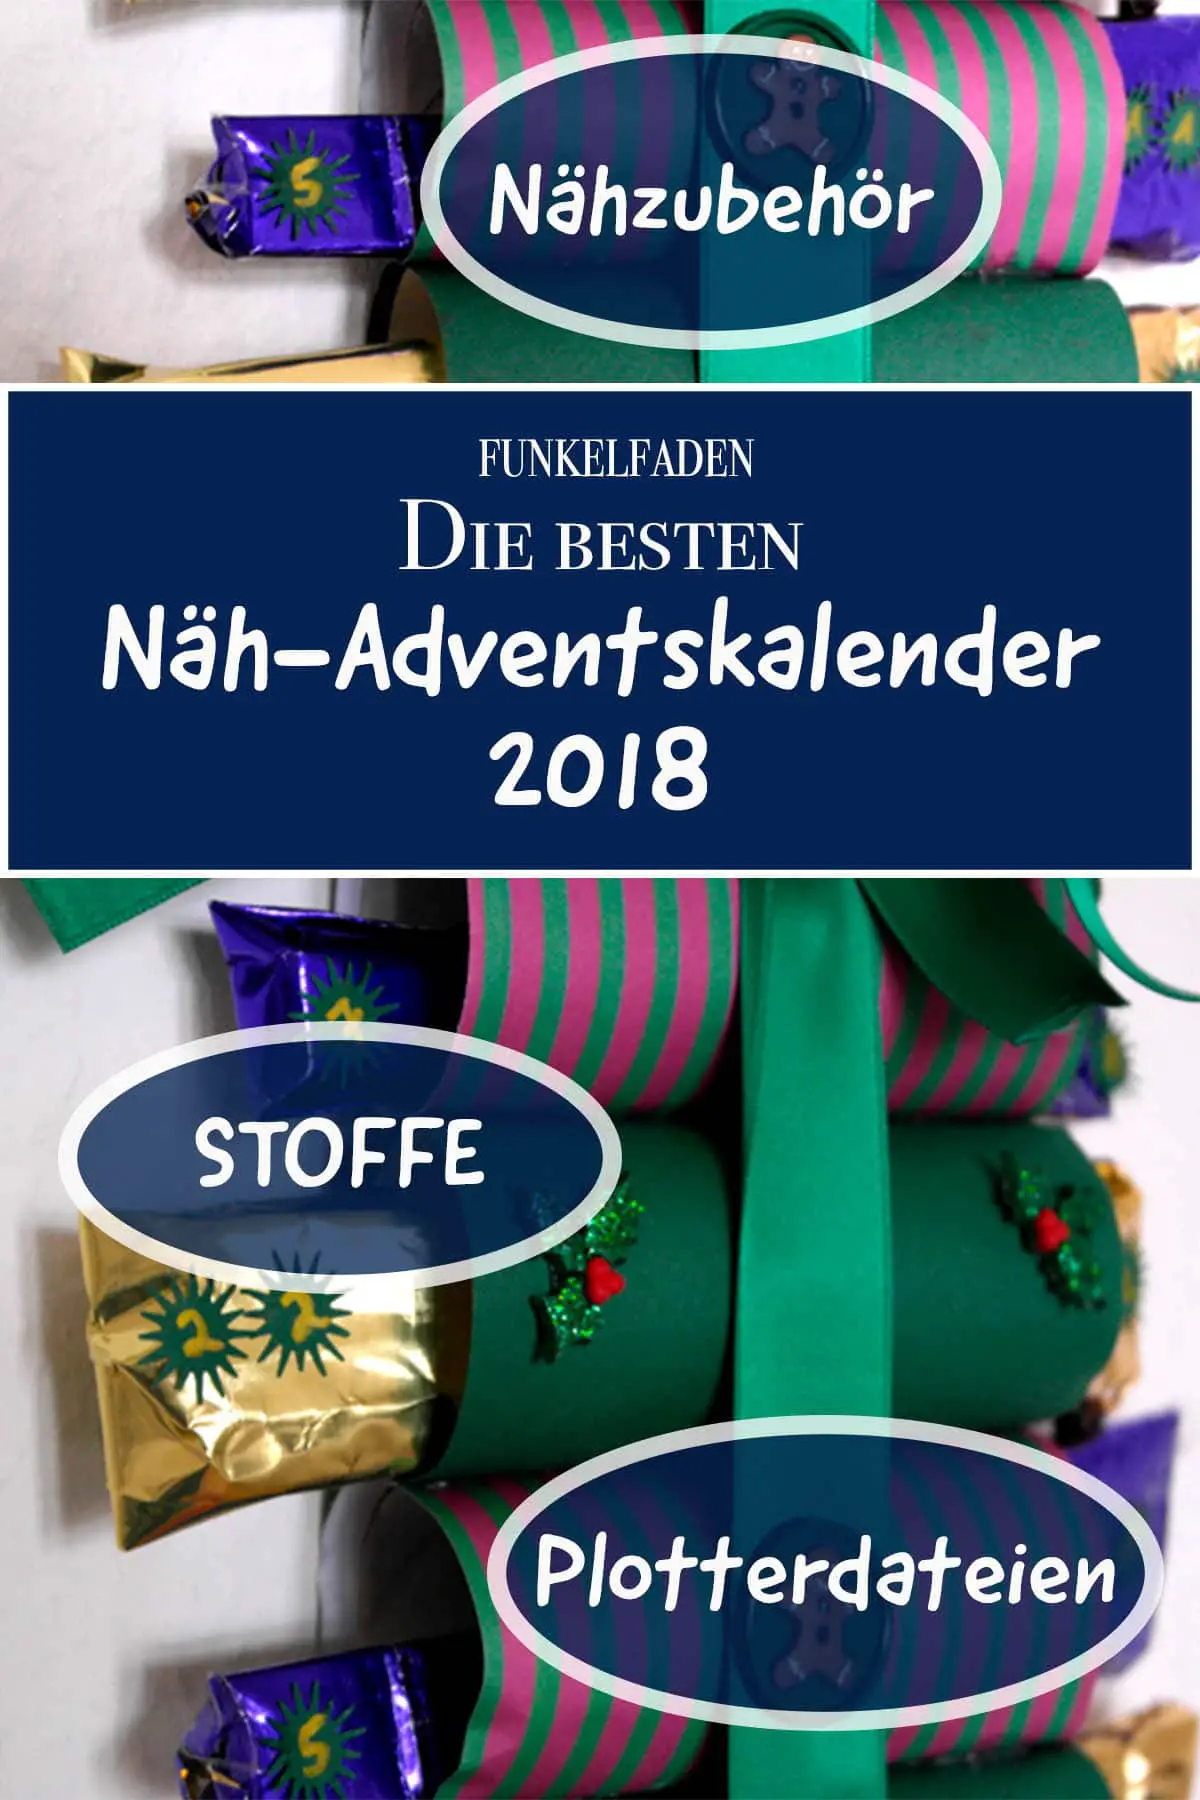 Näh-Adventskalender 2018 mit Stoffen und Nähzubehör